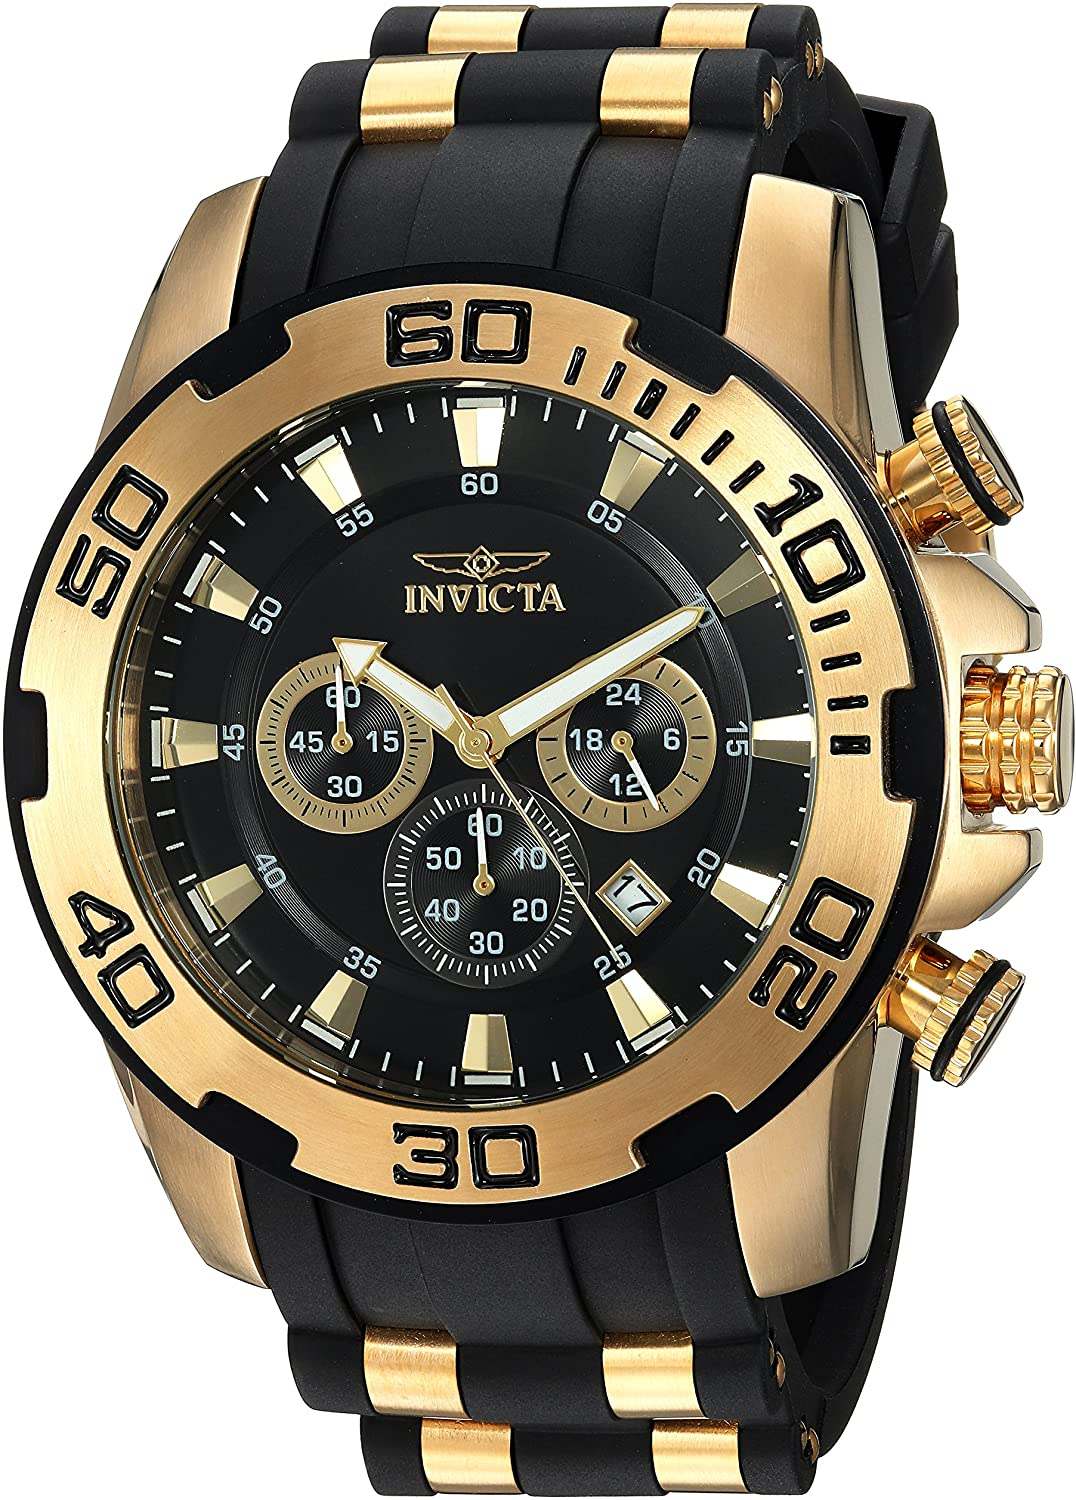 Invicta Stores | Diamond watches for men, Invicta, Watch design-gemektower.com.vn